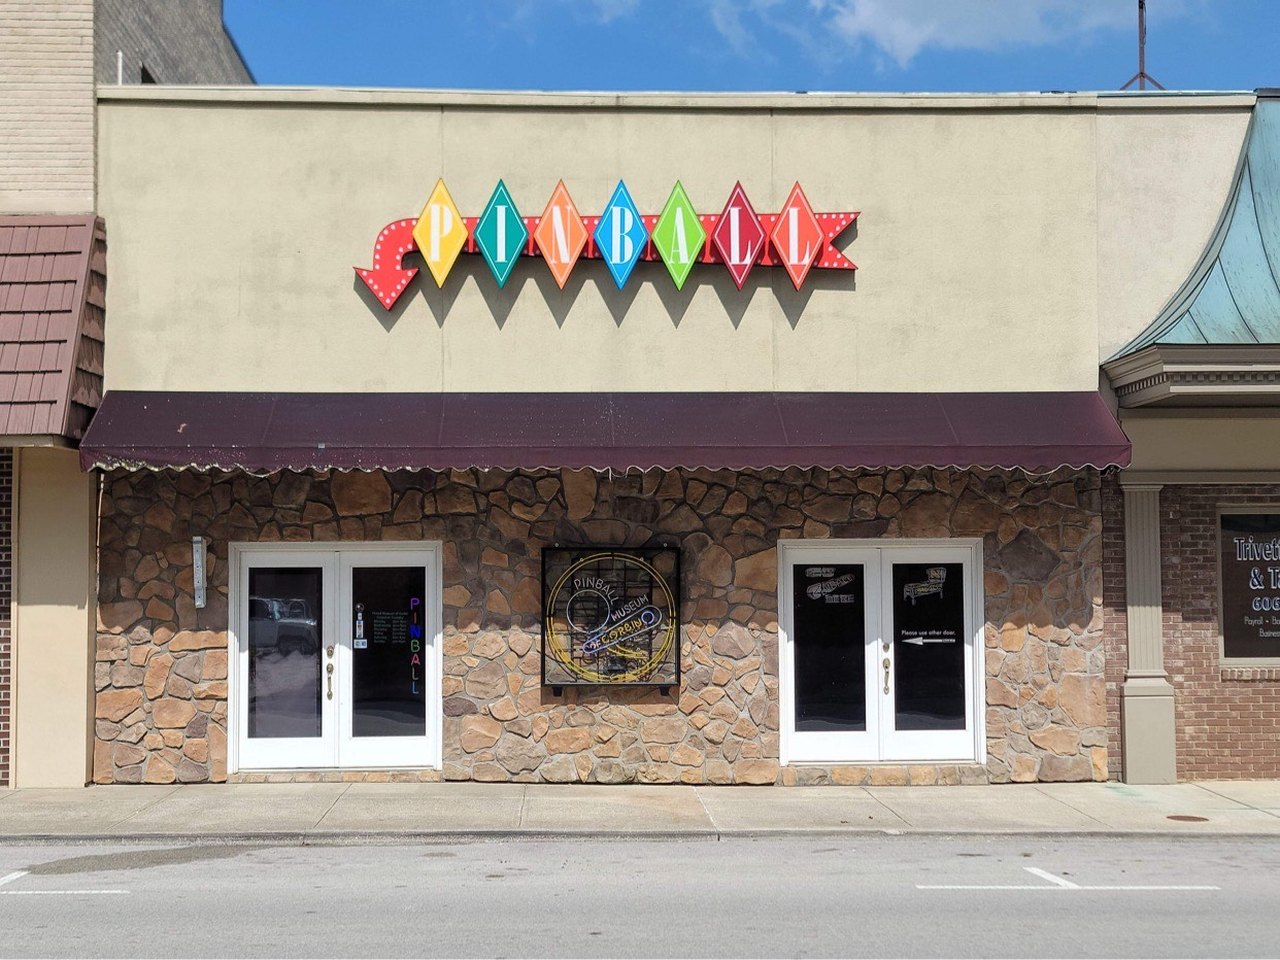 Pinball museum opens in Corbin, Kentucky, News